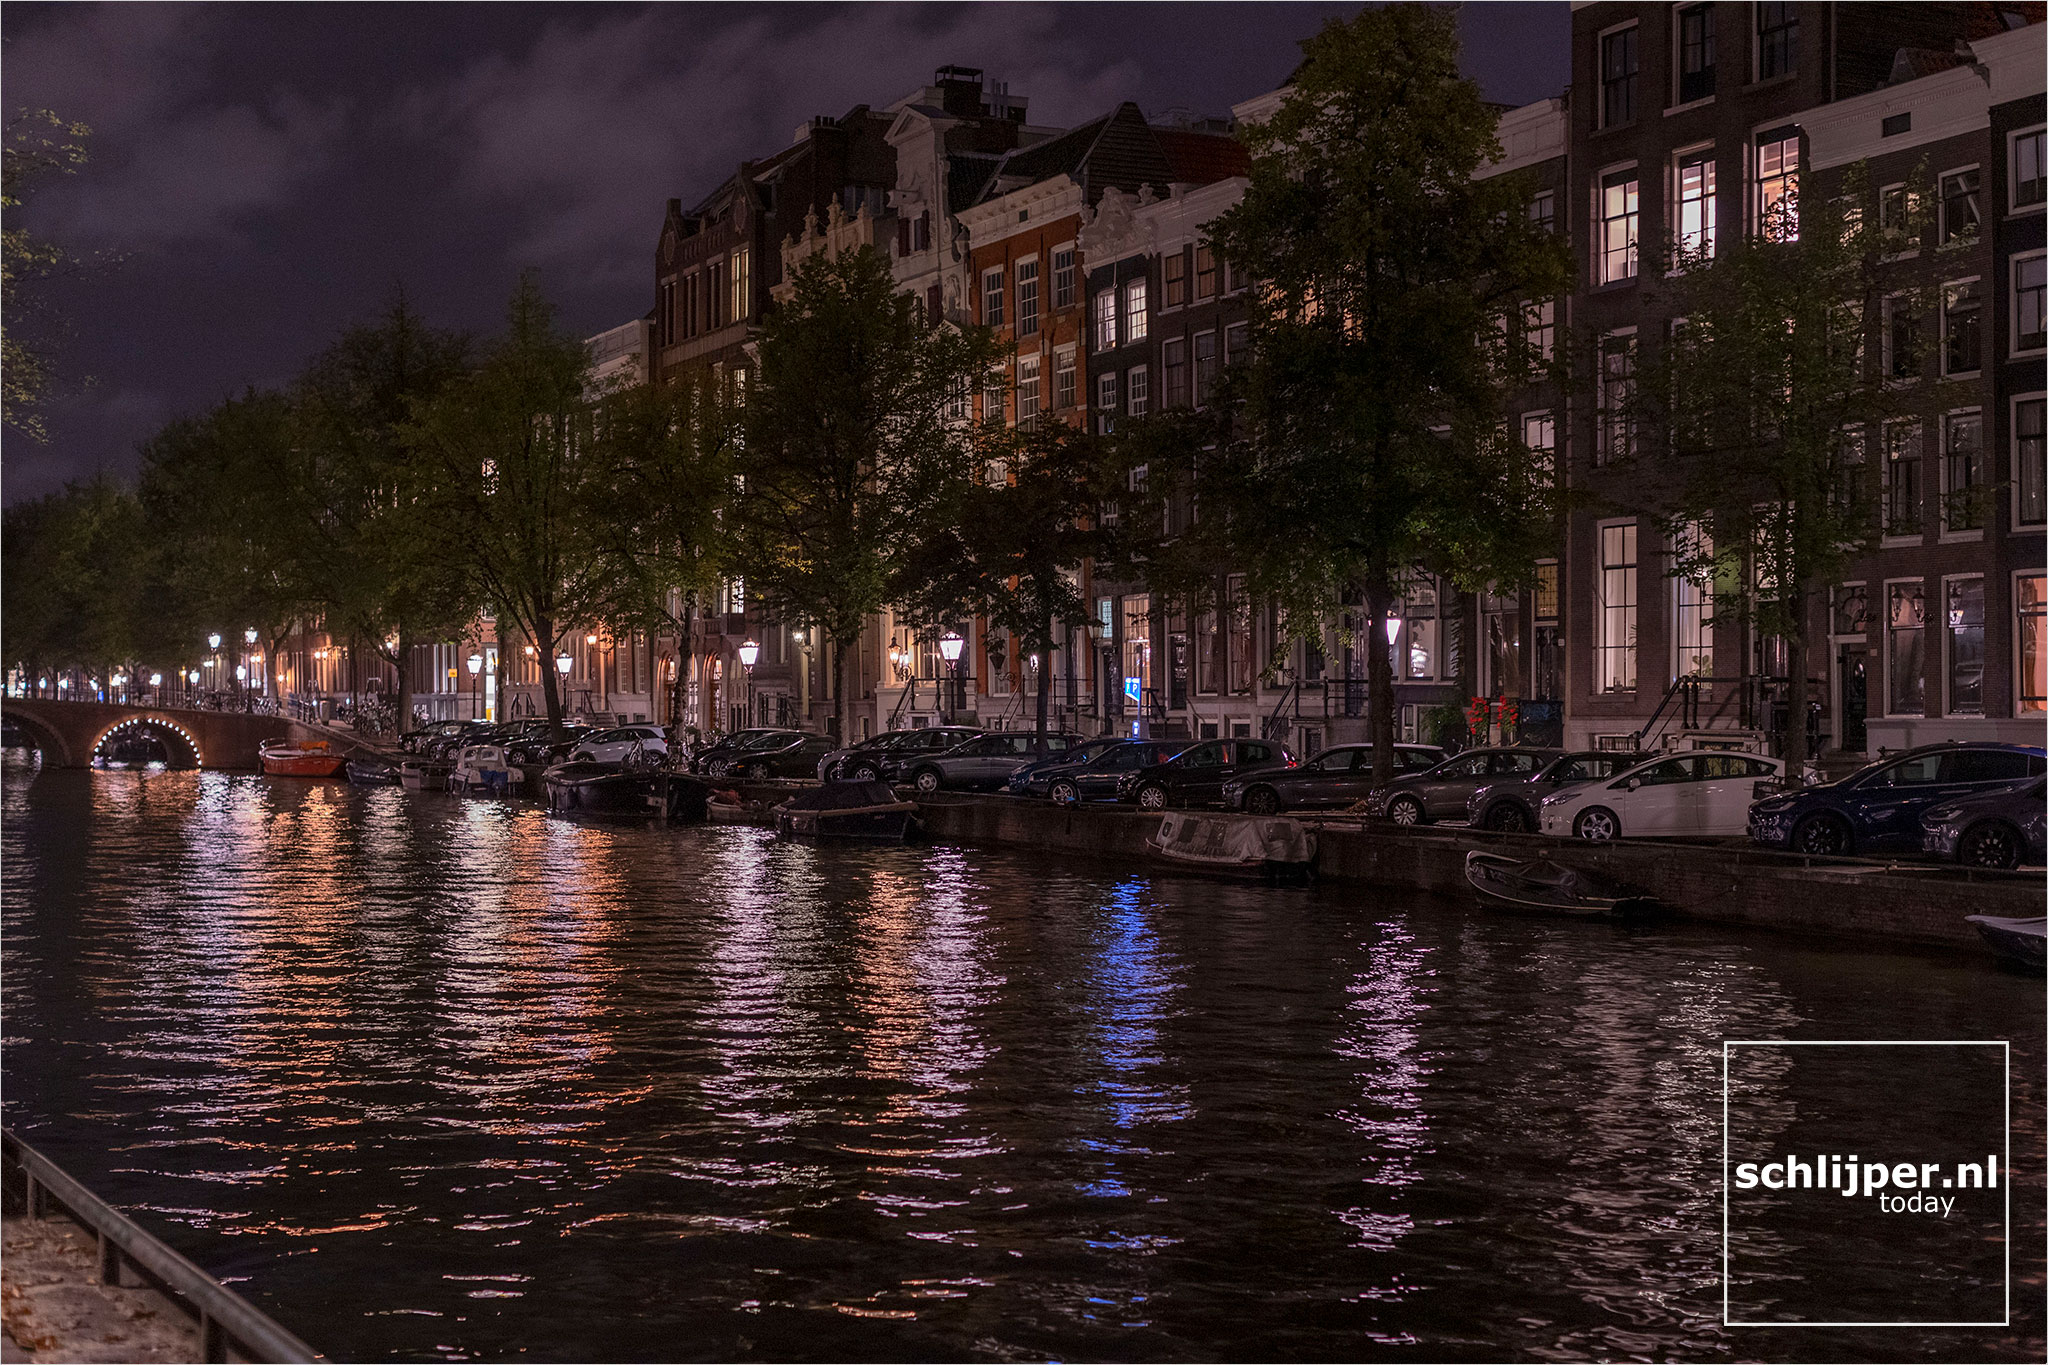 The Netherlands, Amsterdam, 11 september 2021